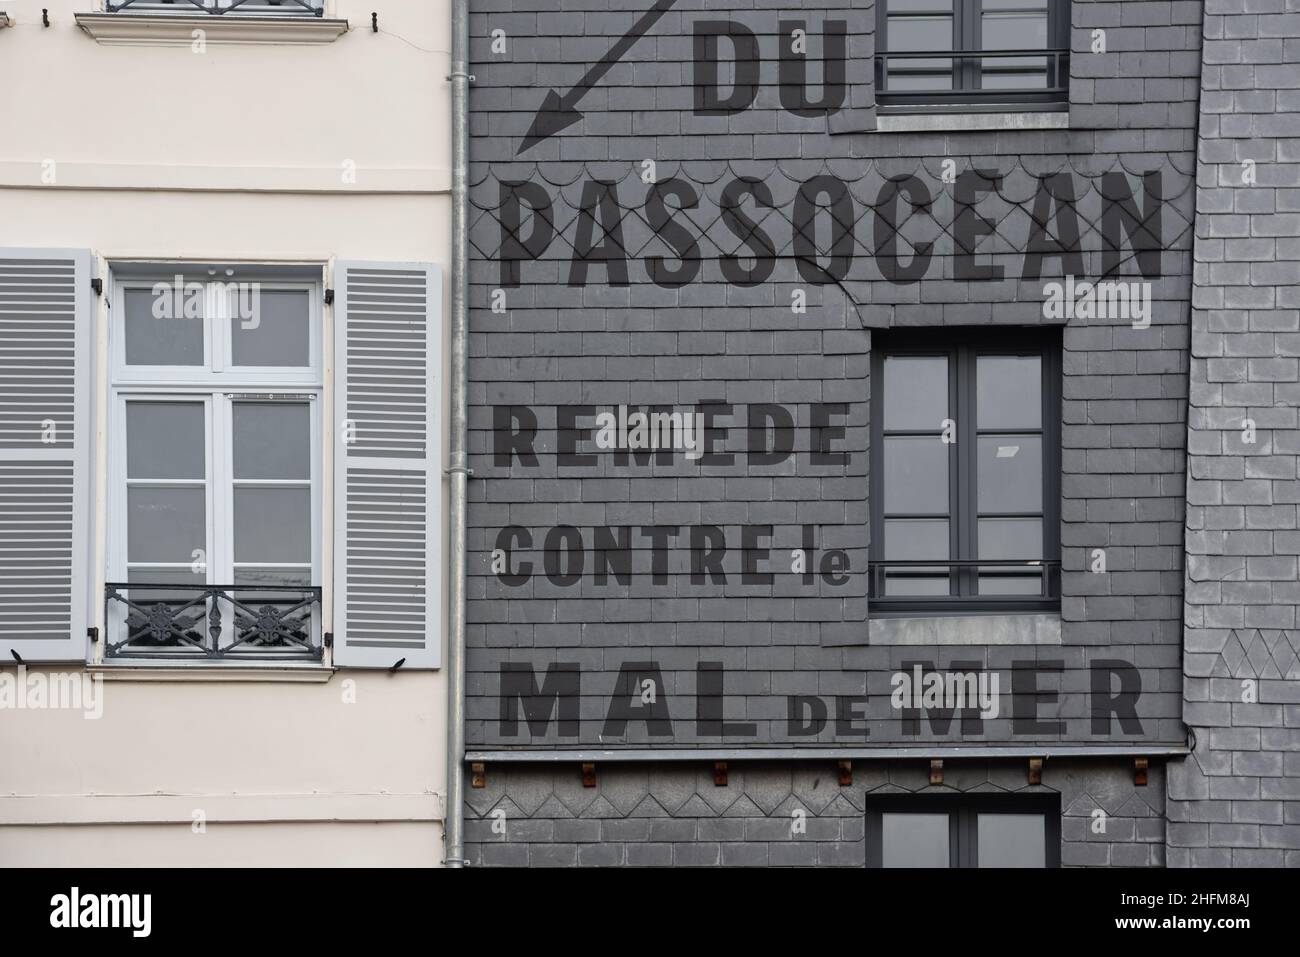 Bâtiment historique avec Slate Shingles & Old Painted Wall publicité un remède contre la mer ou la mer Honfleur Normandie France Banque D'Images